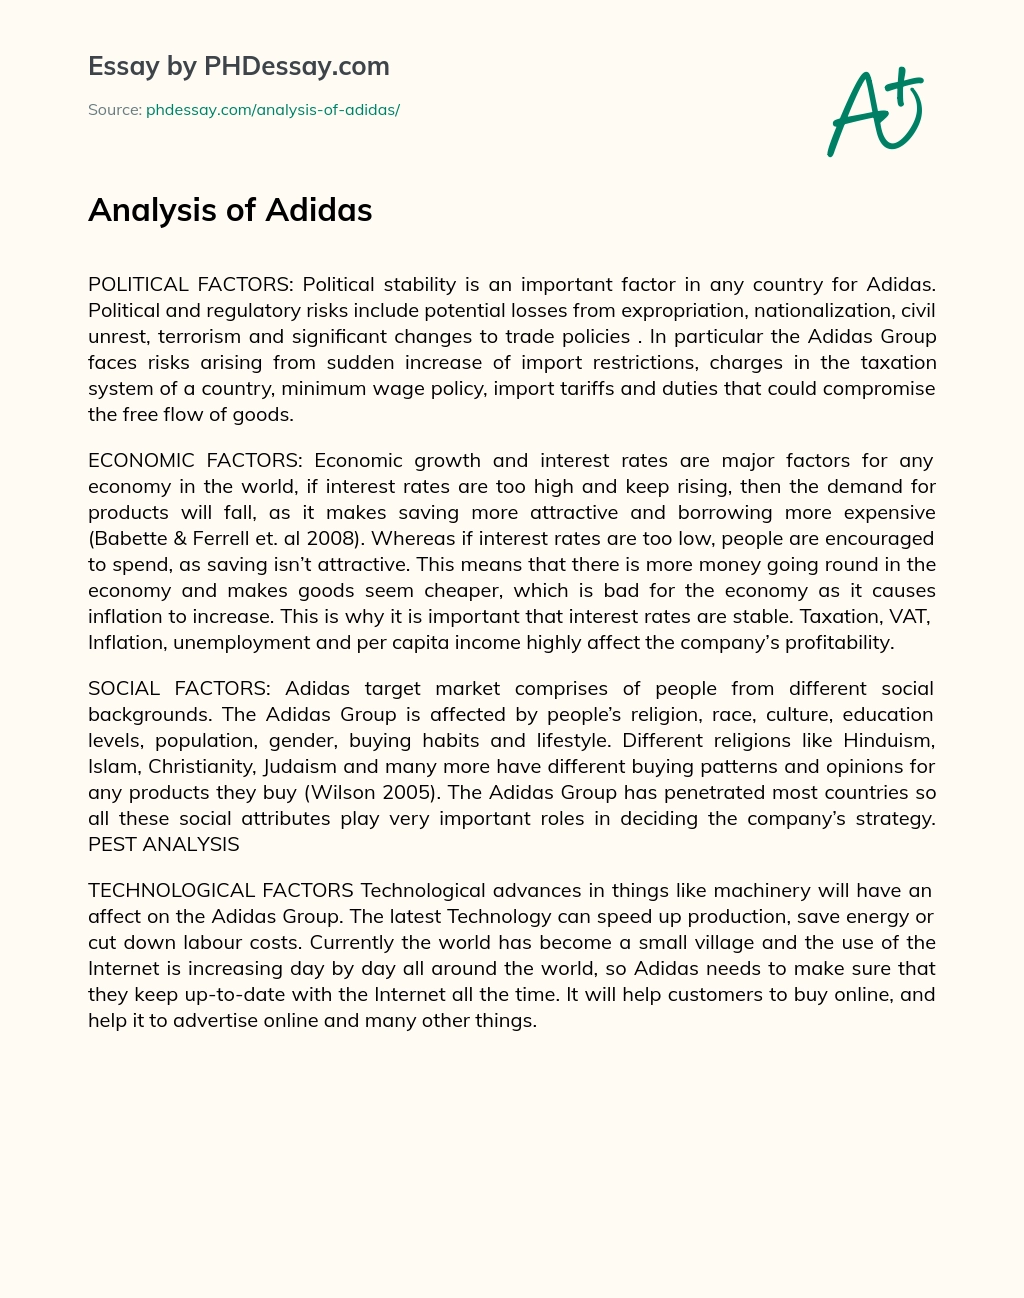 Analysis of Adidas essay